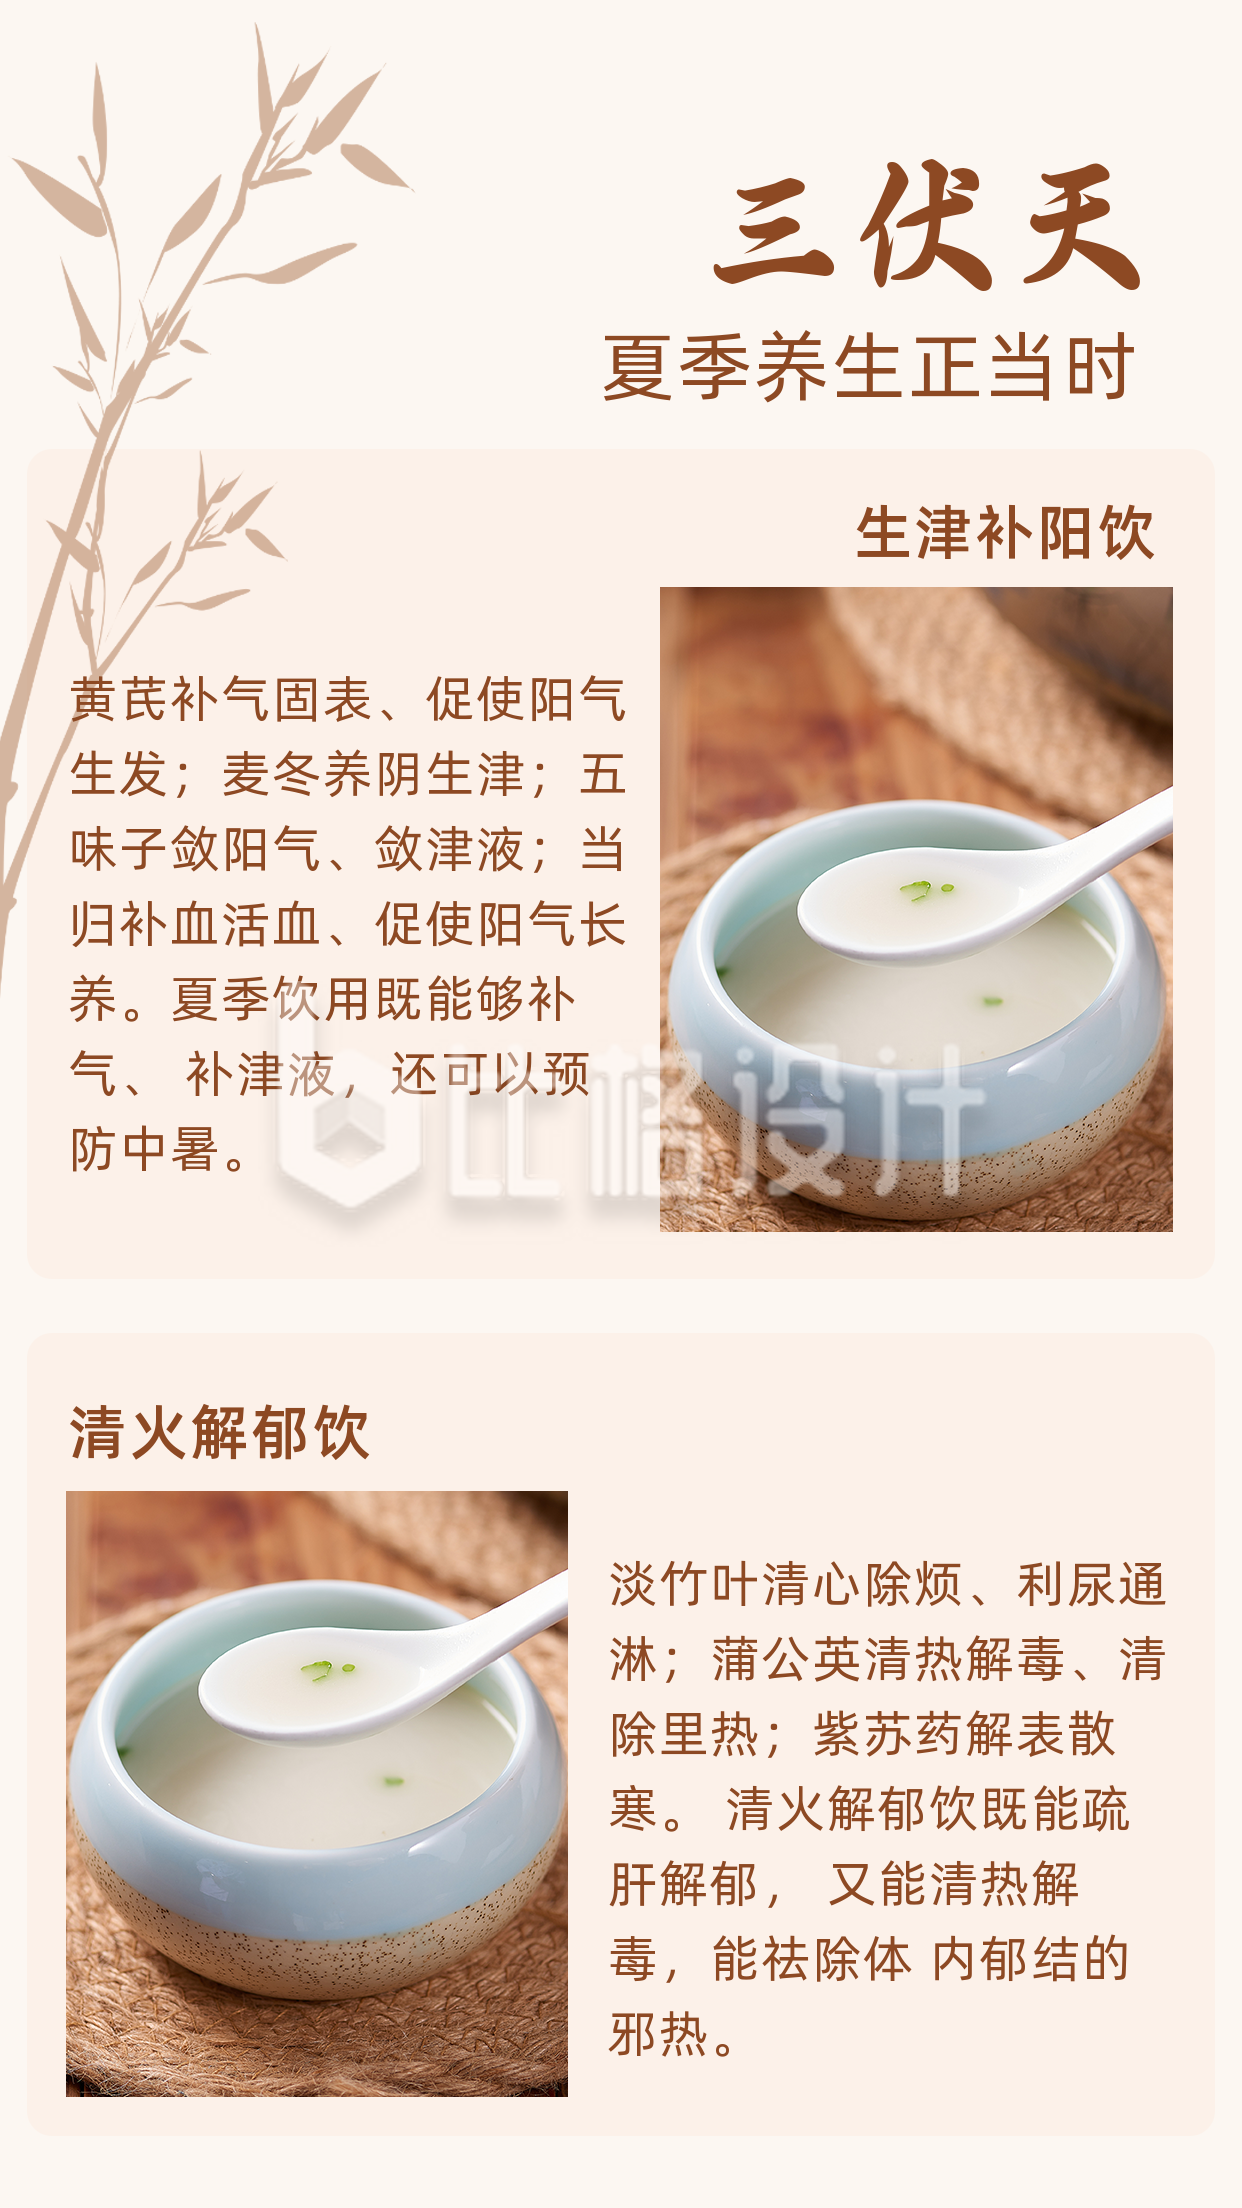 中国传统三伏天养生美食竖版配图